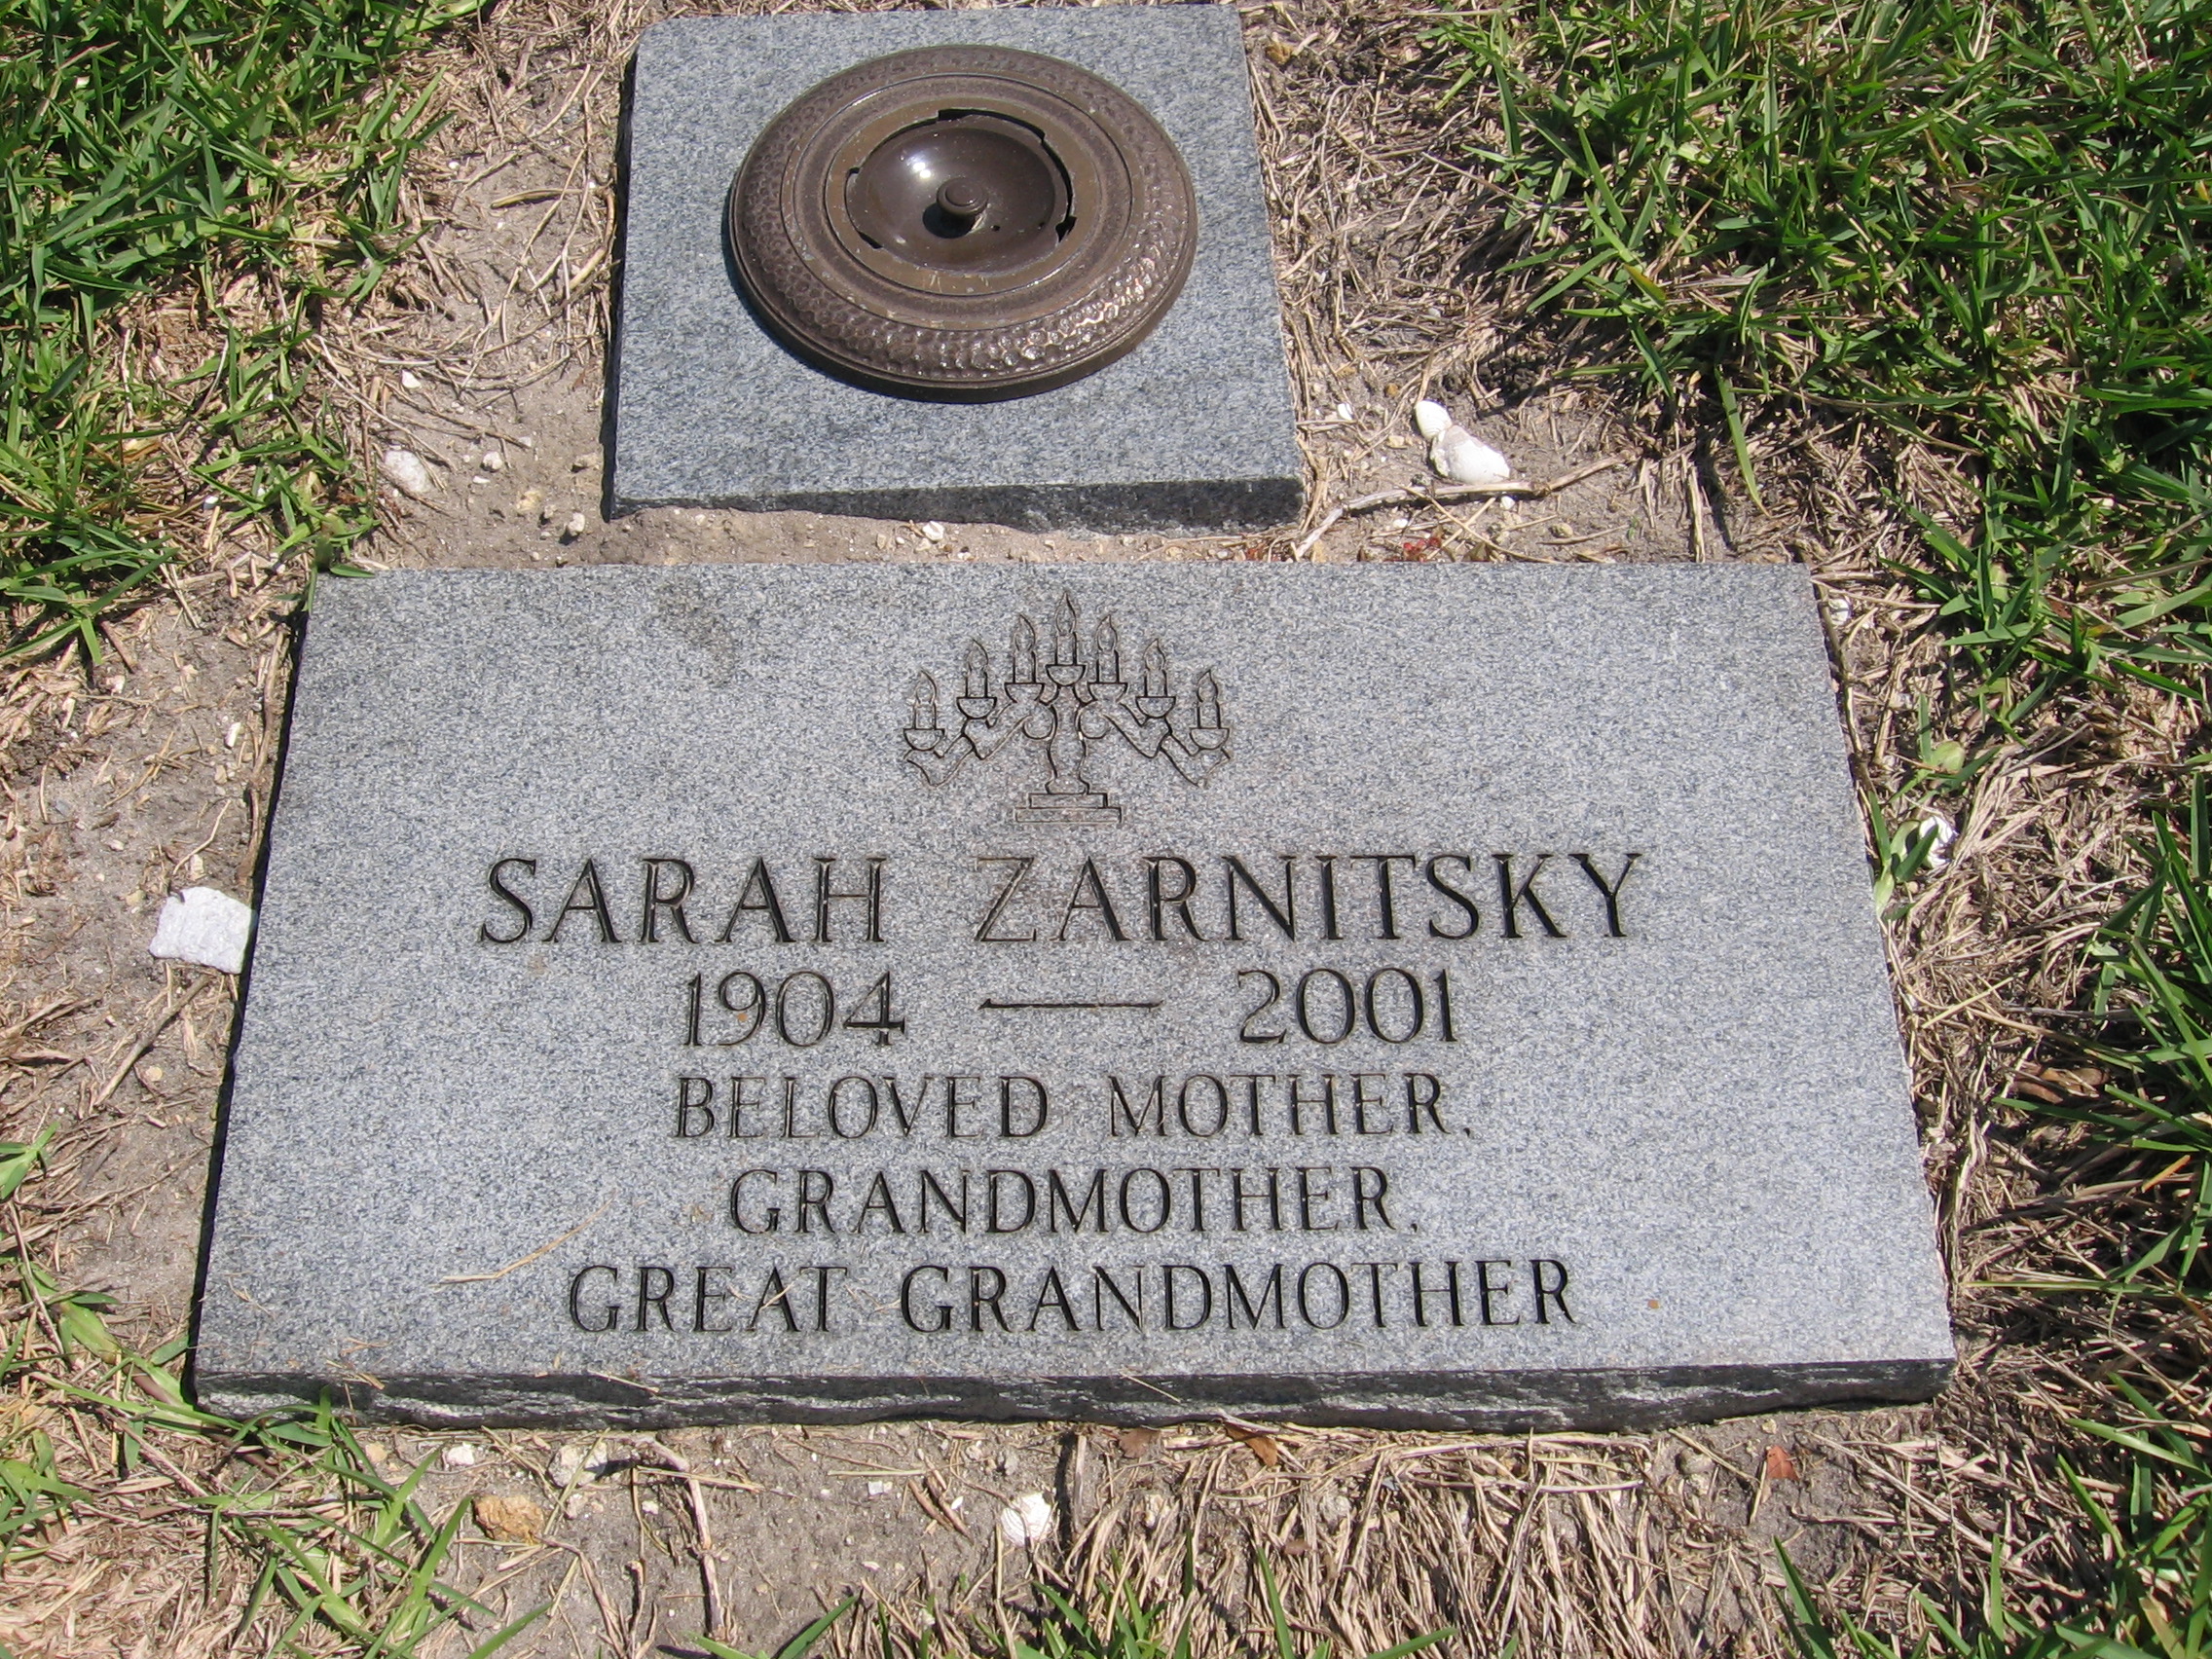 Sarah Zarnitsky